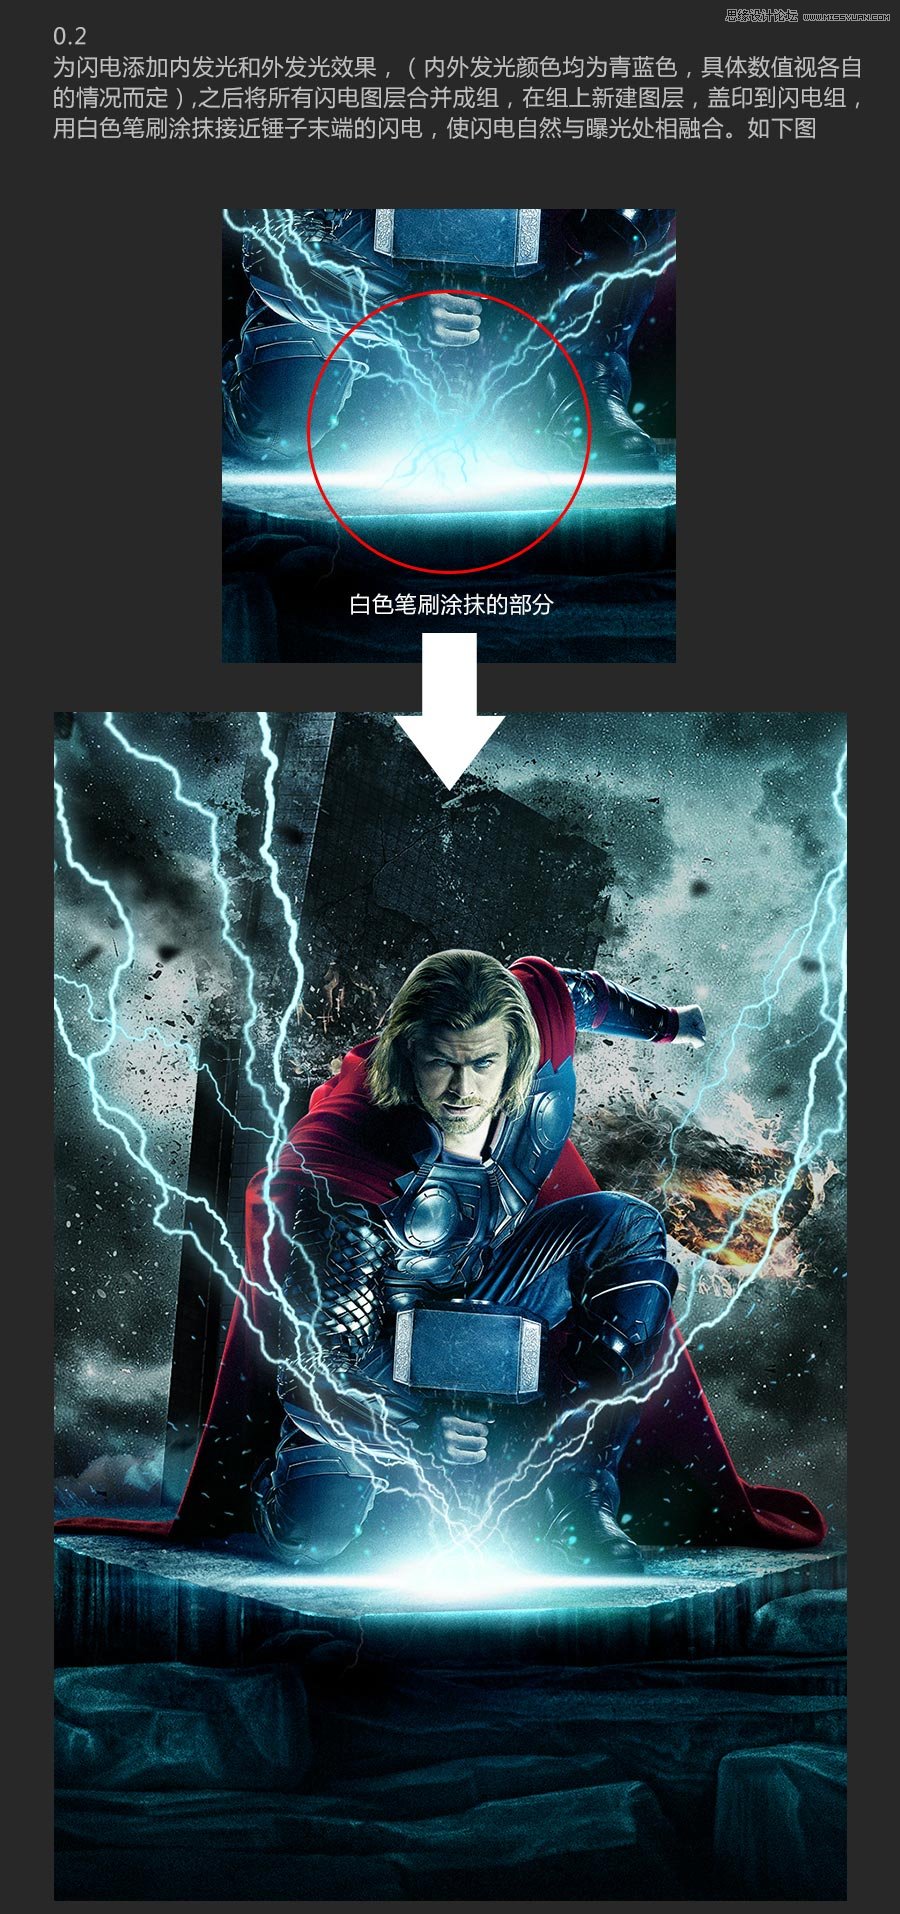 使用Photoshop合成雷神主题的电影海报教程